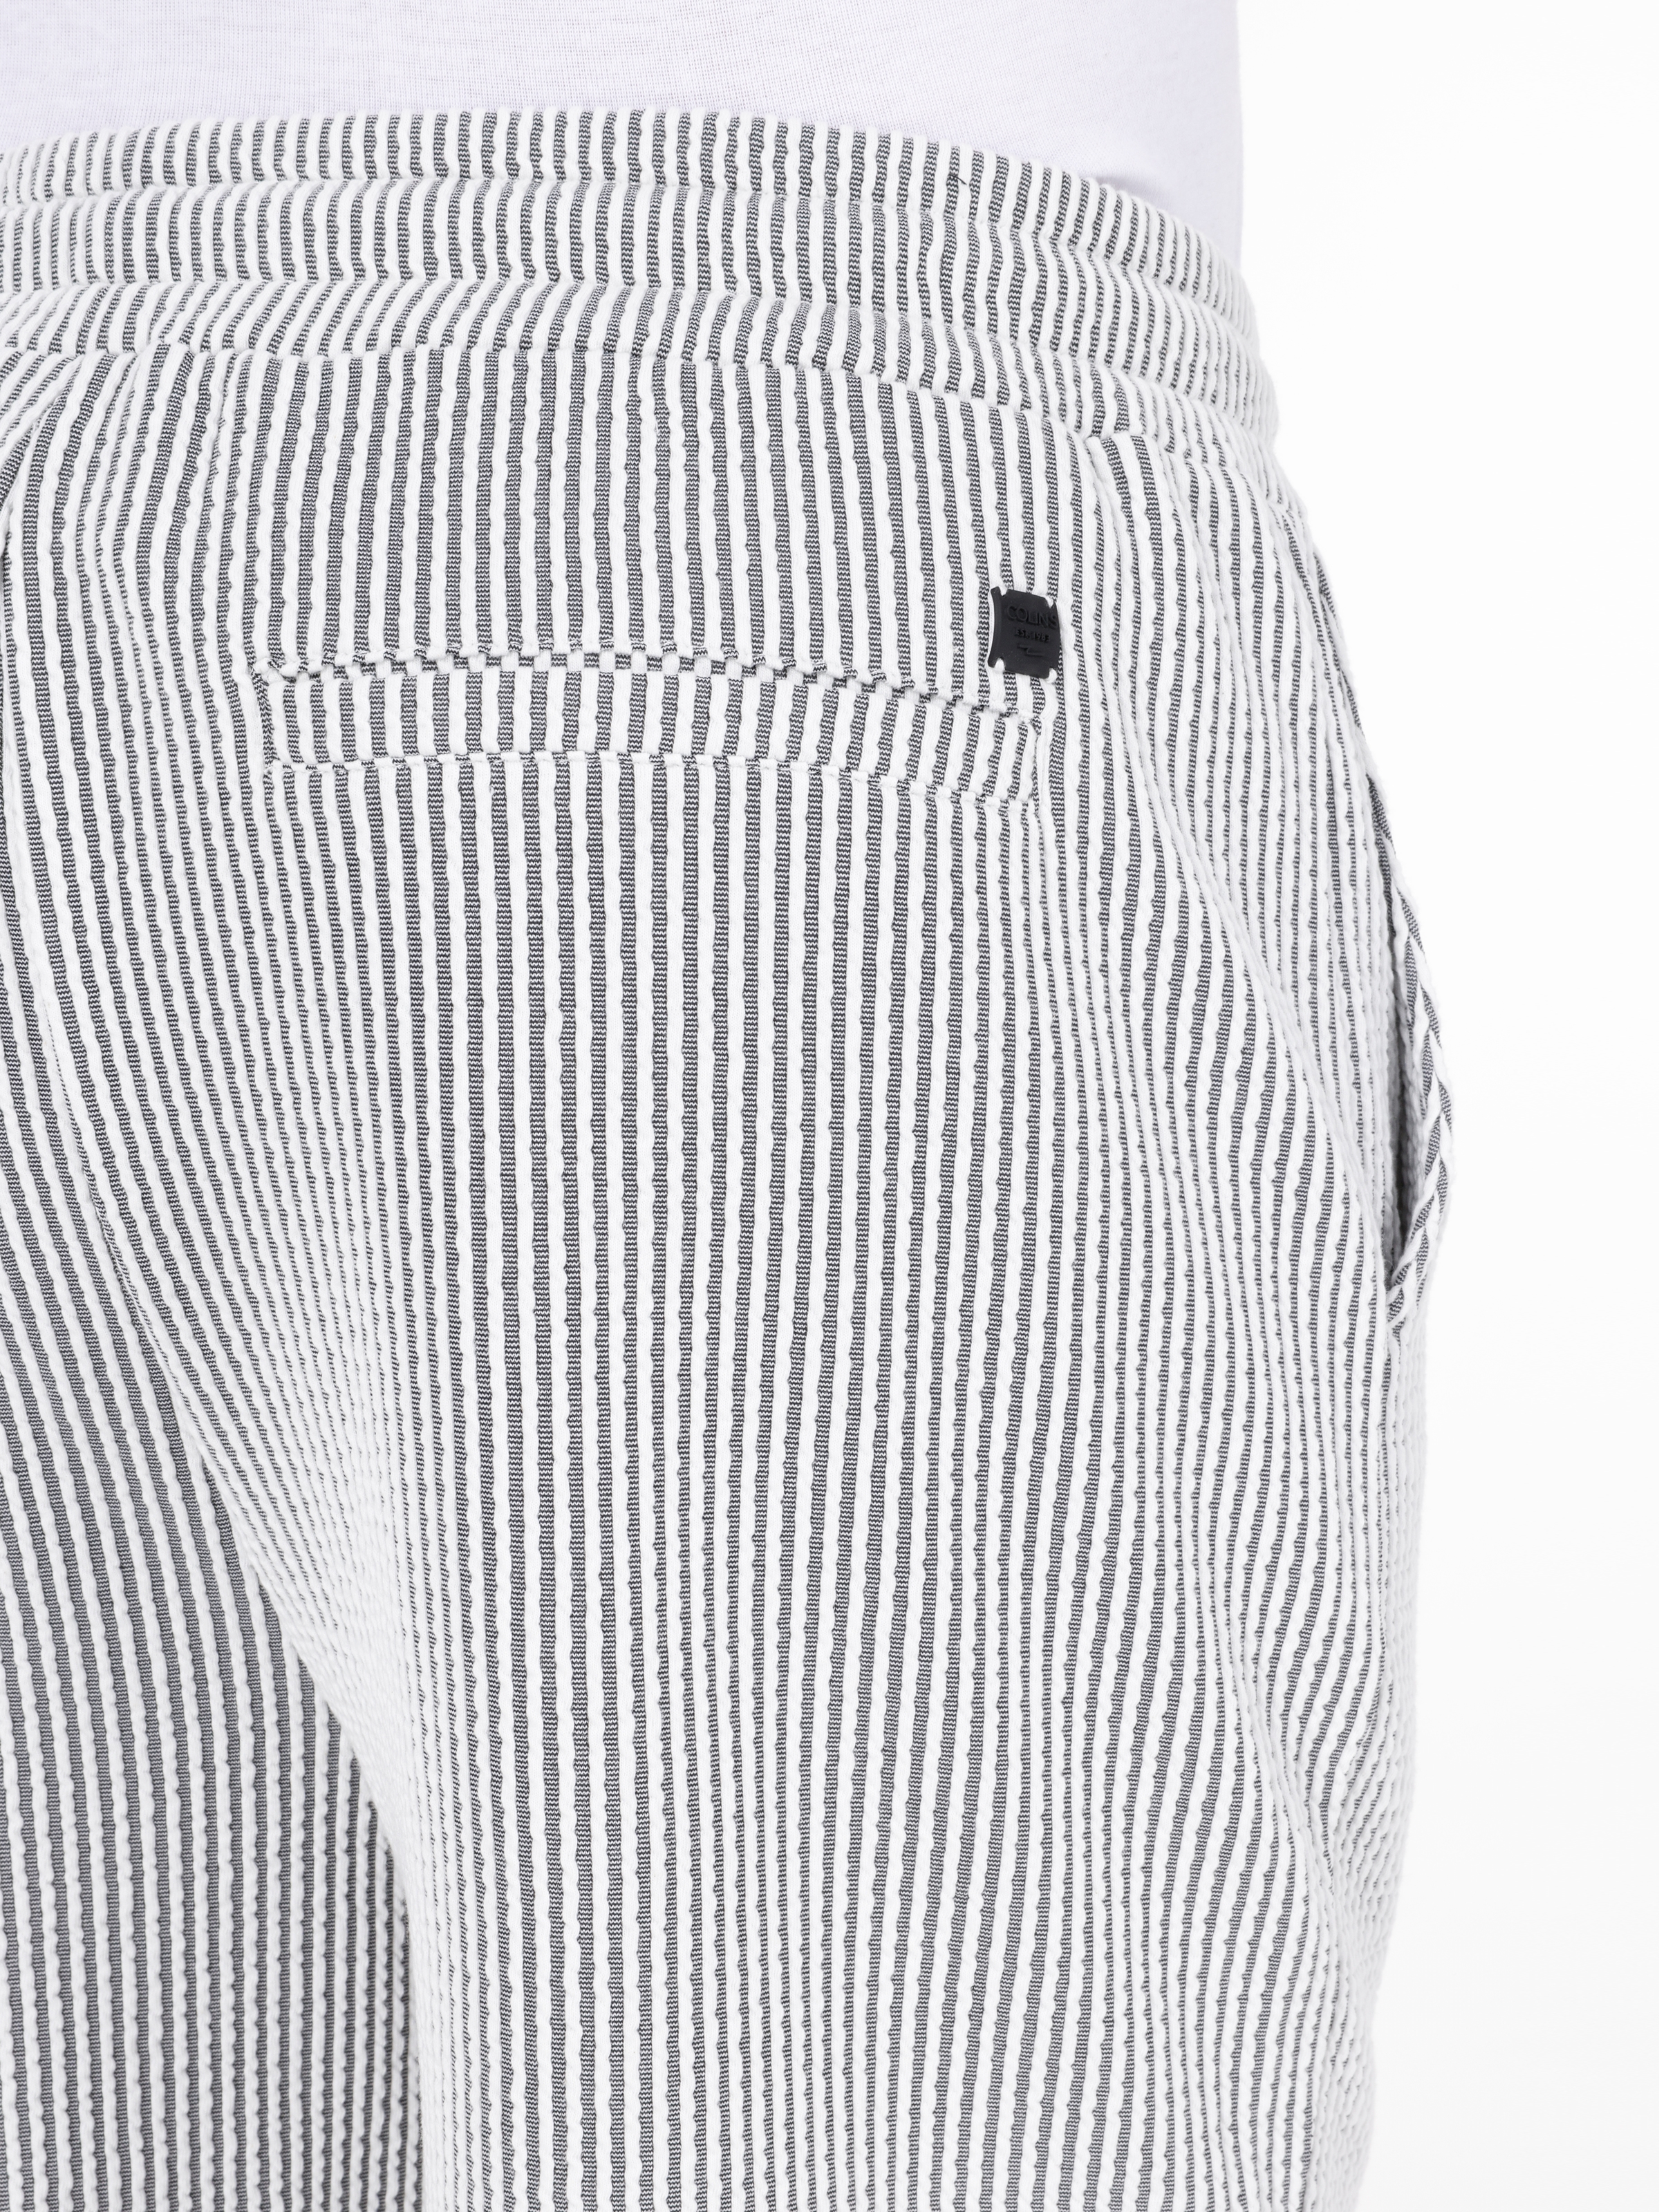 Afișați detalii pentru Short / Pantaloni Scurti De Barbati  Regular Fit  